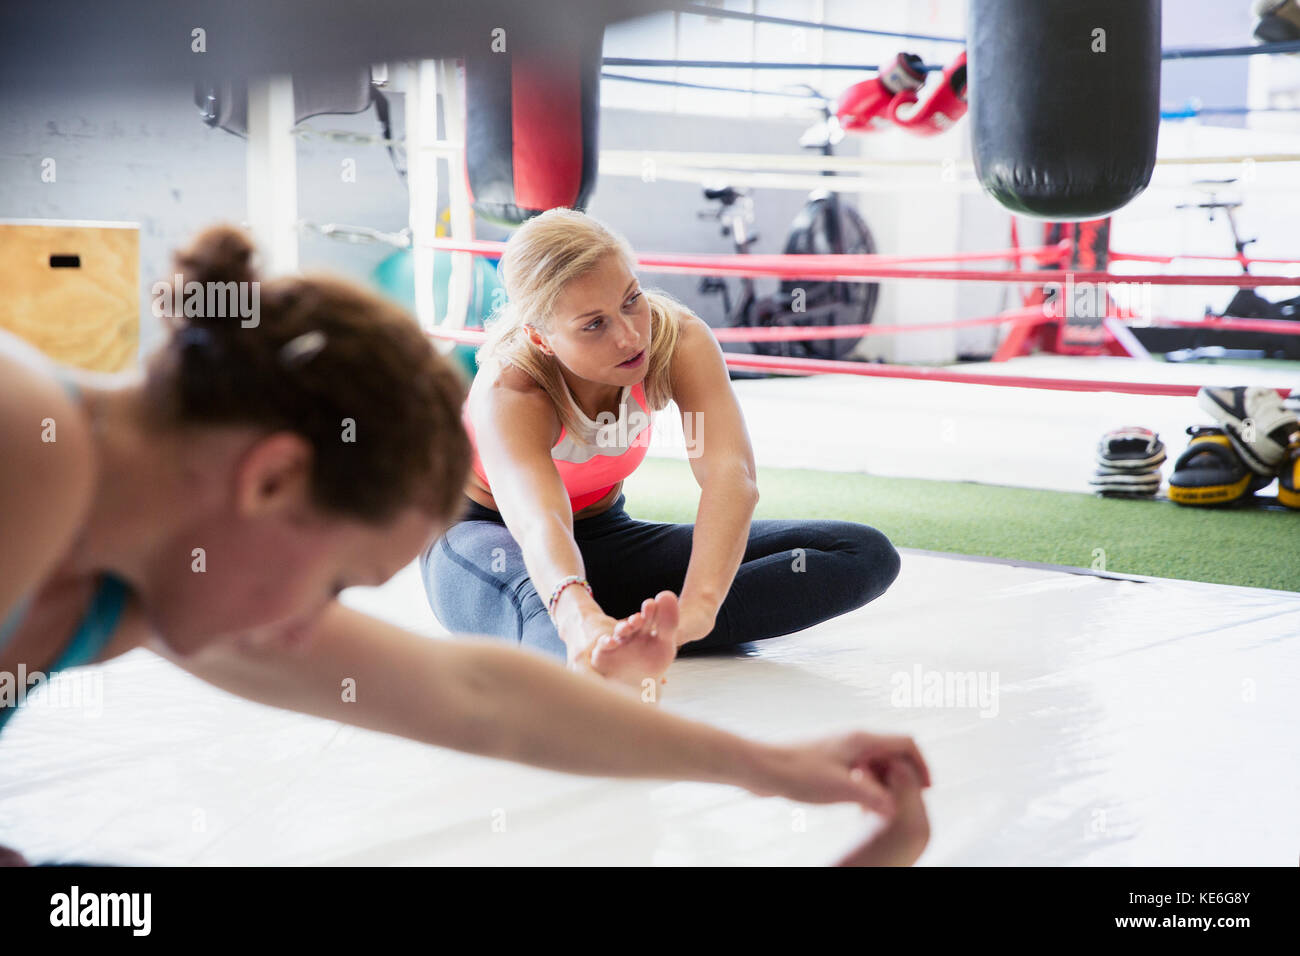 Le giovani donne allungano le gambe accanto all'anello di boxe in palestra Foto Stock